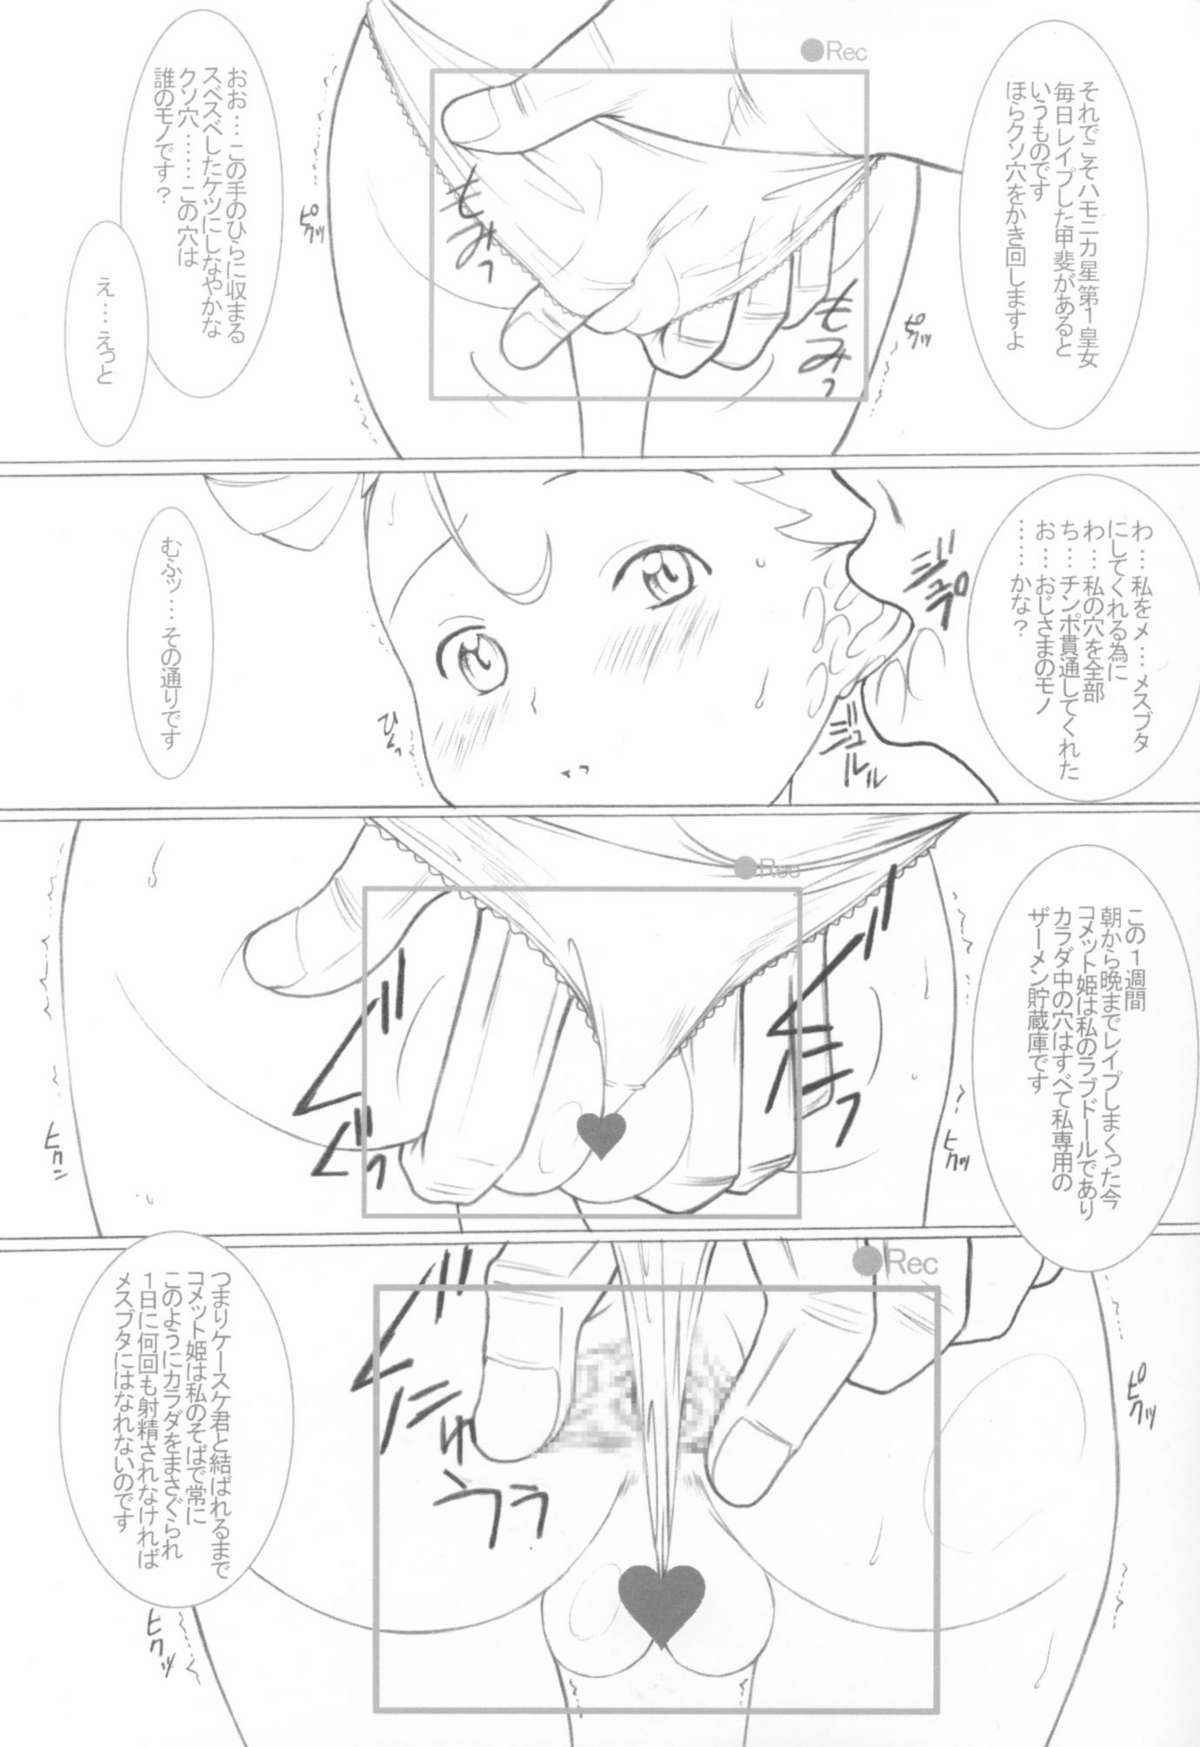 [Land Urchin (千鐘, ゴン平八)] DeathSpell 7 コメットさんはメスブタ (Cosmic Baton Girl コメットさん☆)